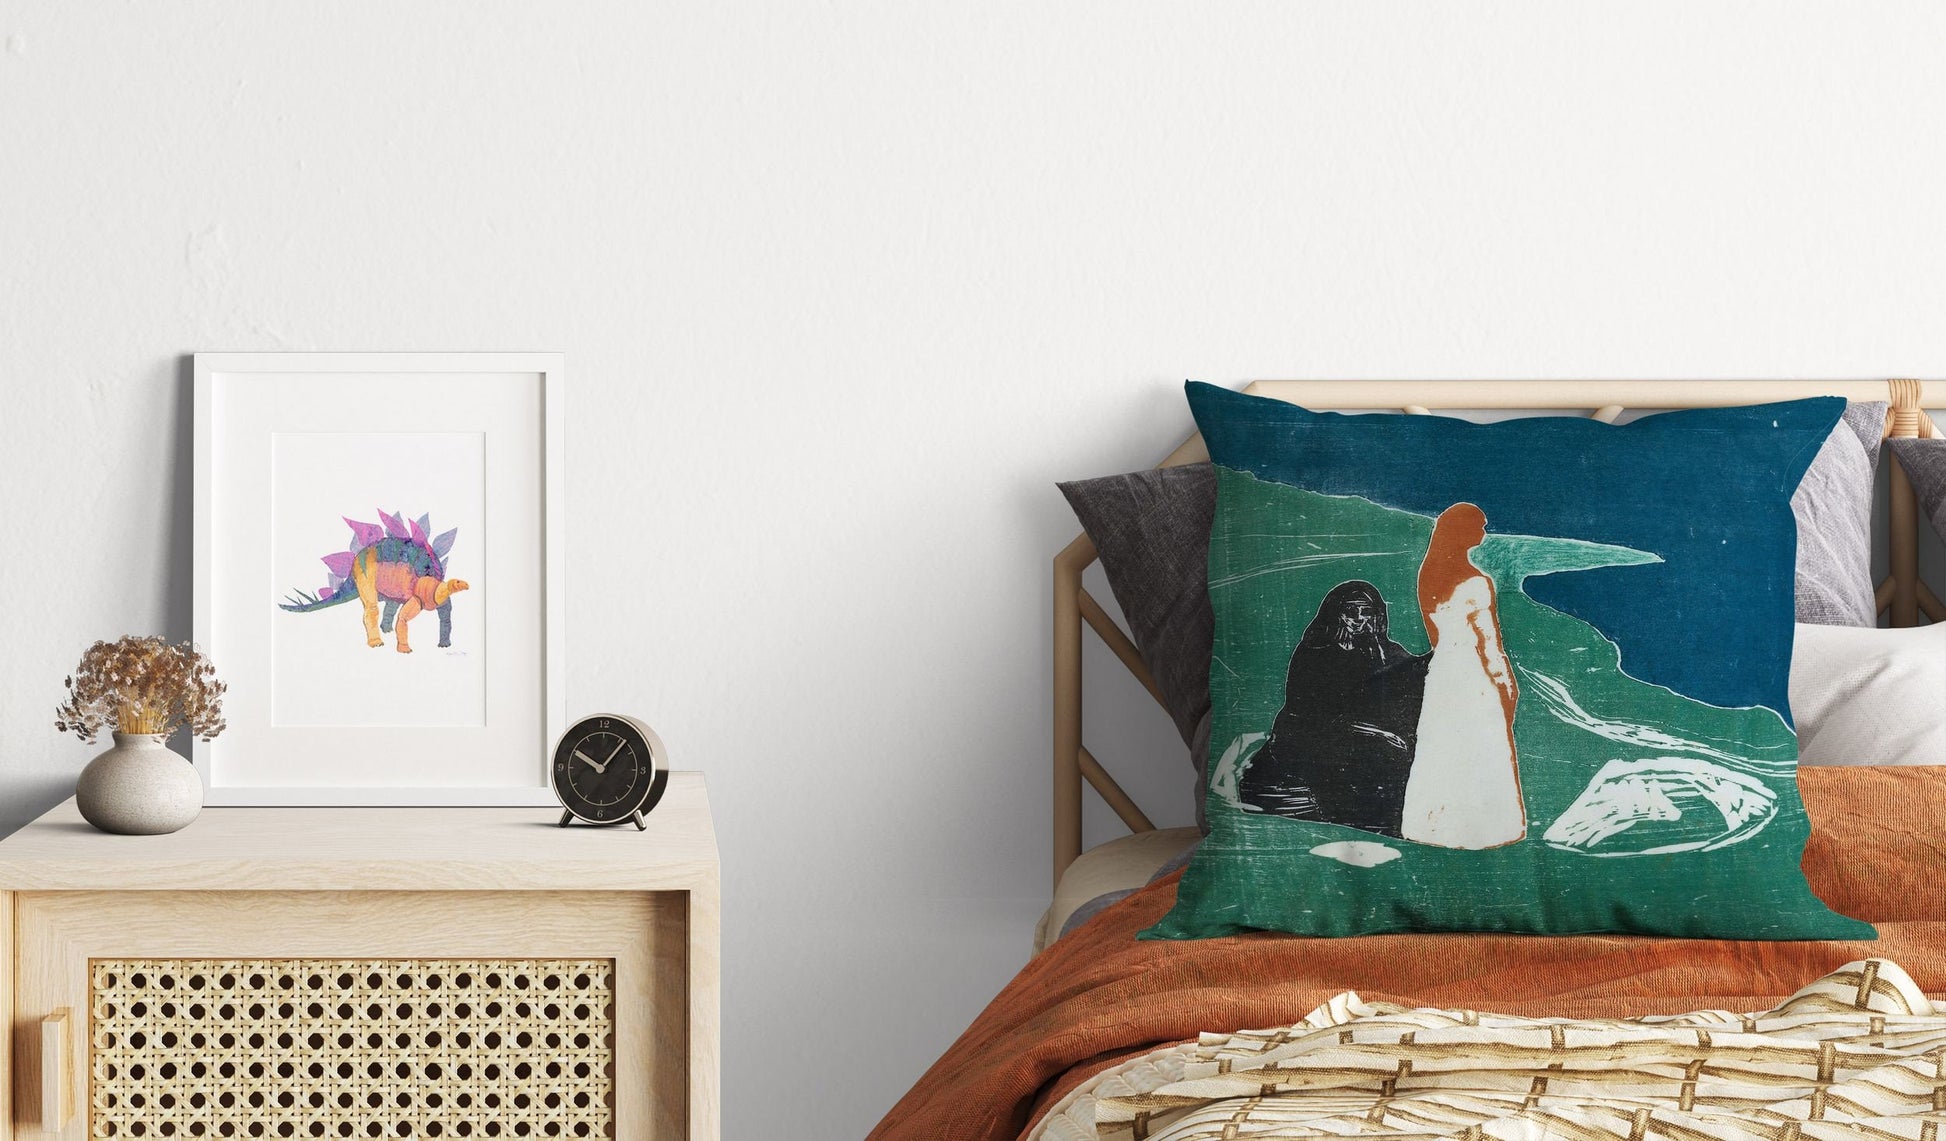 Edvard Munch Famous Art Two Women On The Beach, Toss Pillow, Abstract Throw Pillow, Artist Pillow, Green Pillow Cases, Modern Pillow